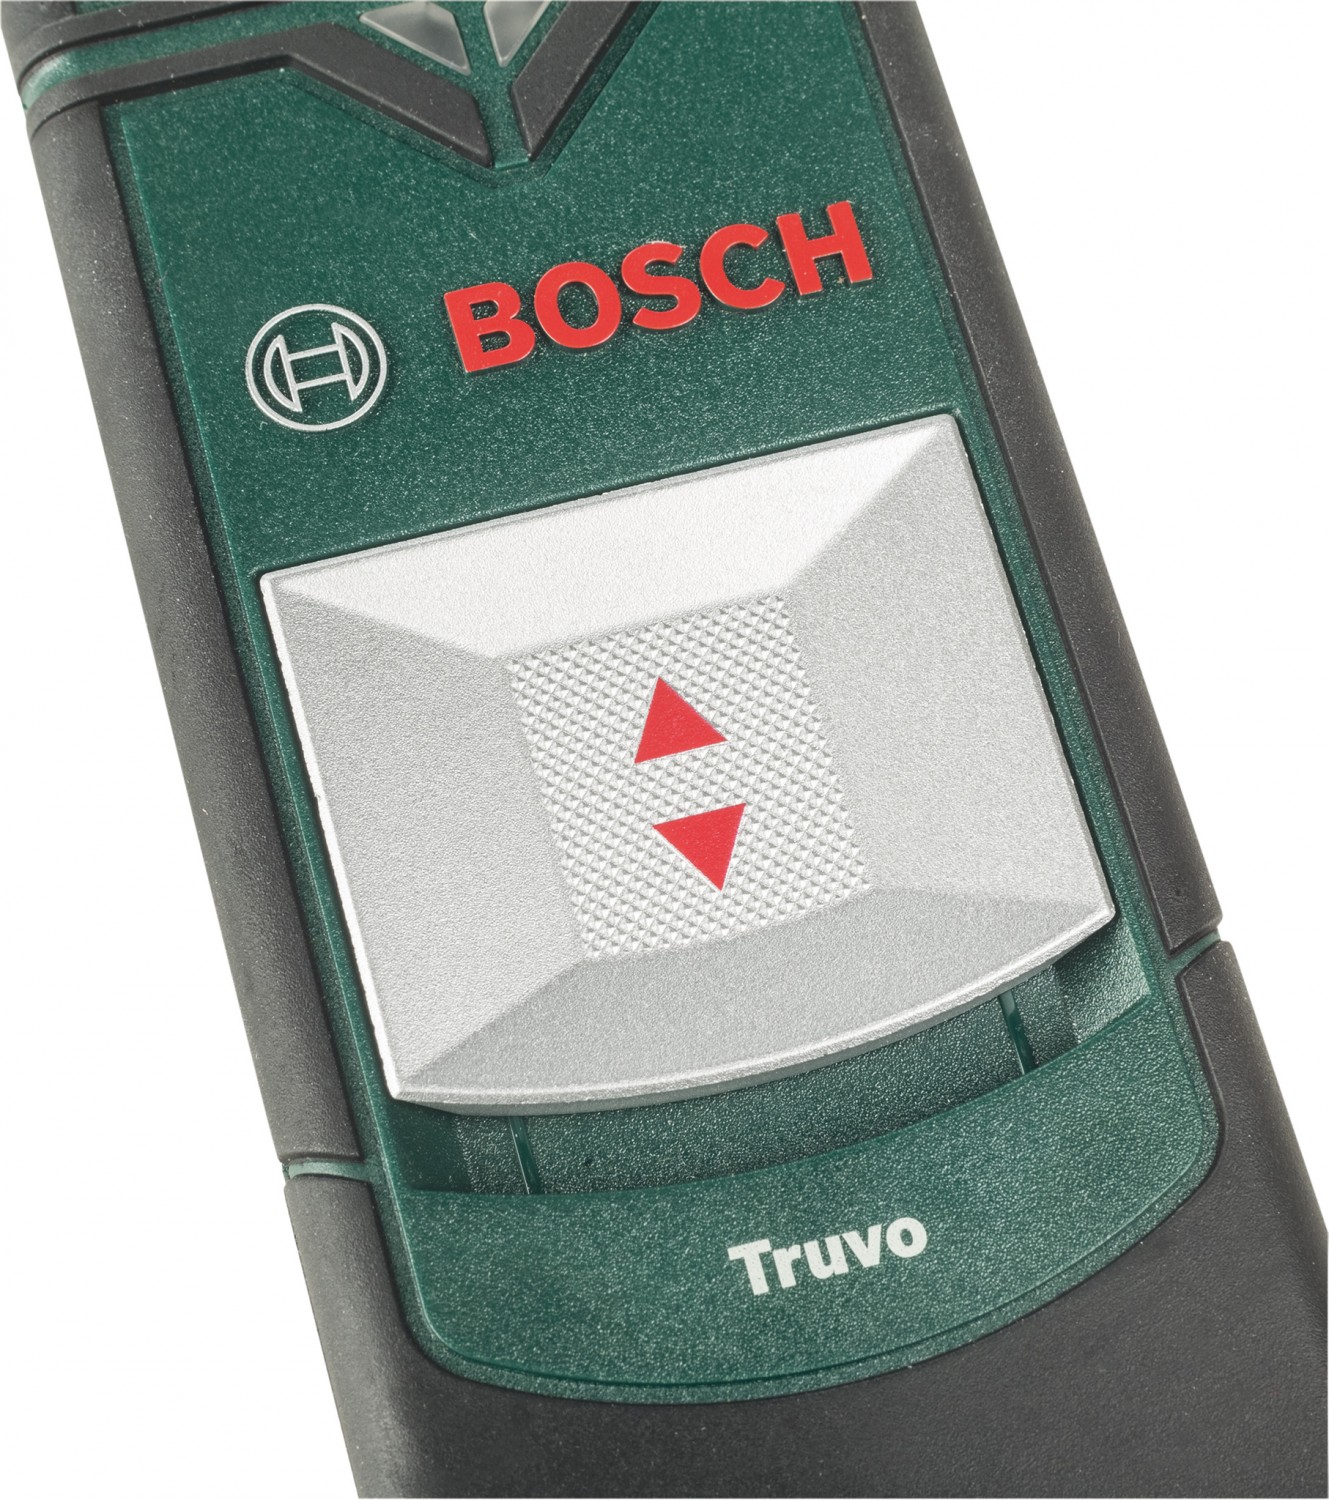 Multi Messgeräte Bosch Truvo im Test, Bild 5